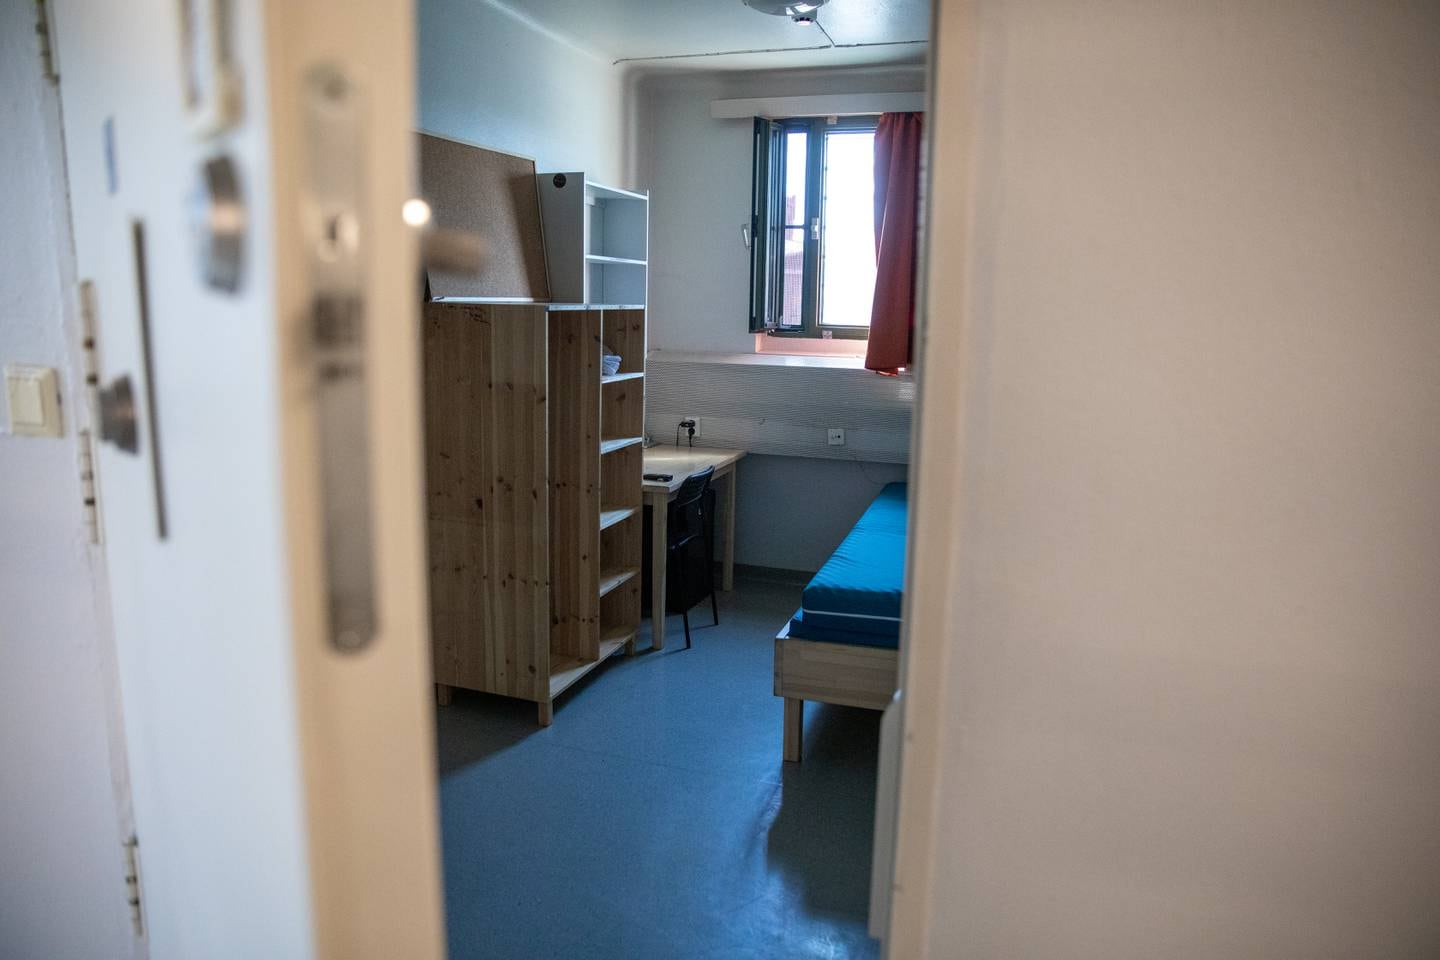 Innsatte i Oslo fengsel må i snitt tilbringe over 19 timer i døgnet alene på et syv kvadratmeter stort rom, fordi fengselet verken har fasiliteter eller bemanning til å la dem være ute lenger.